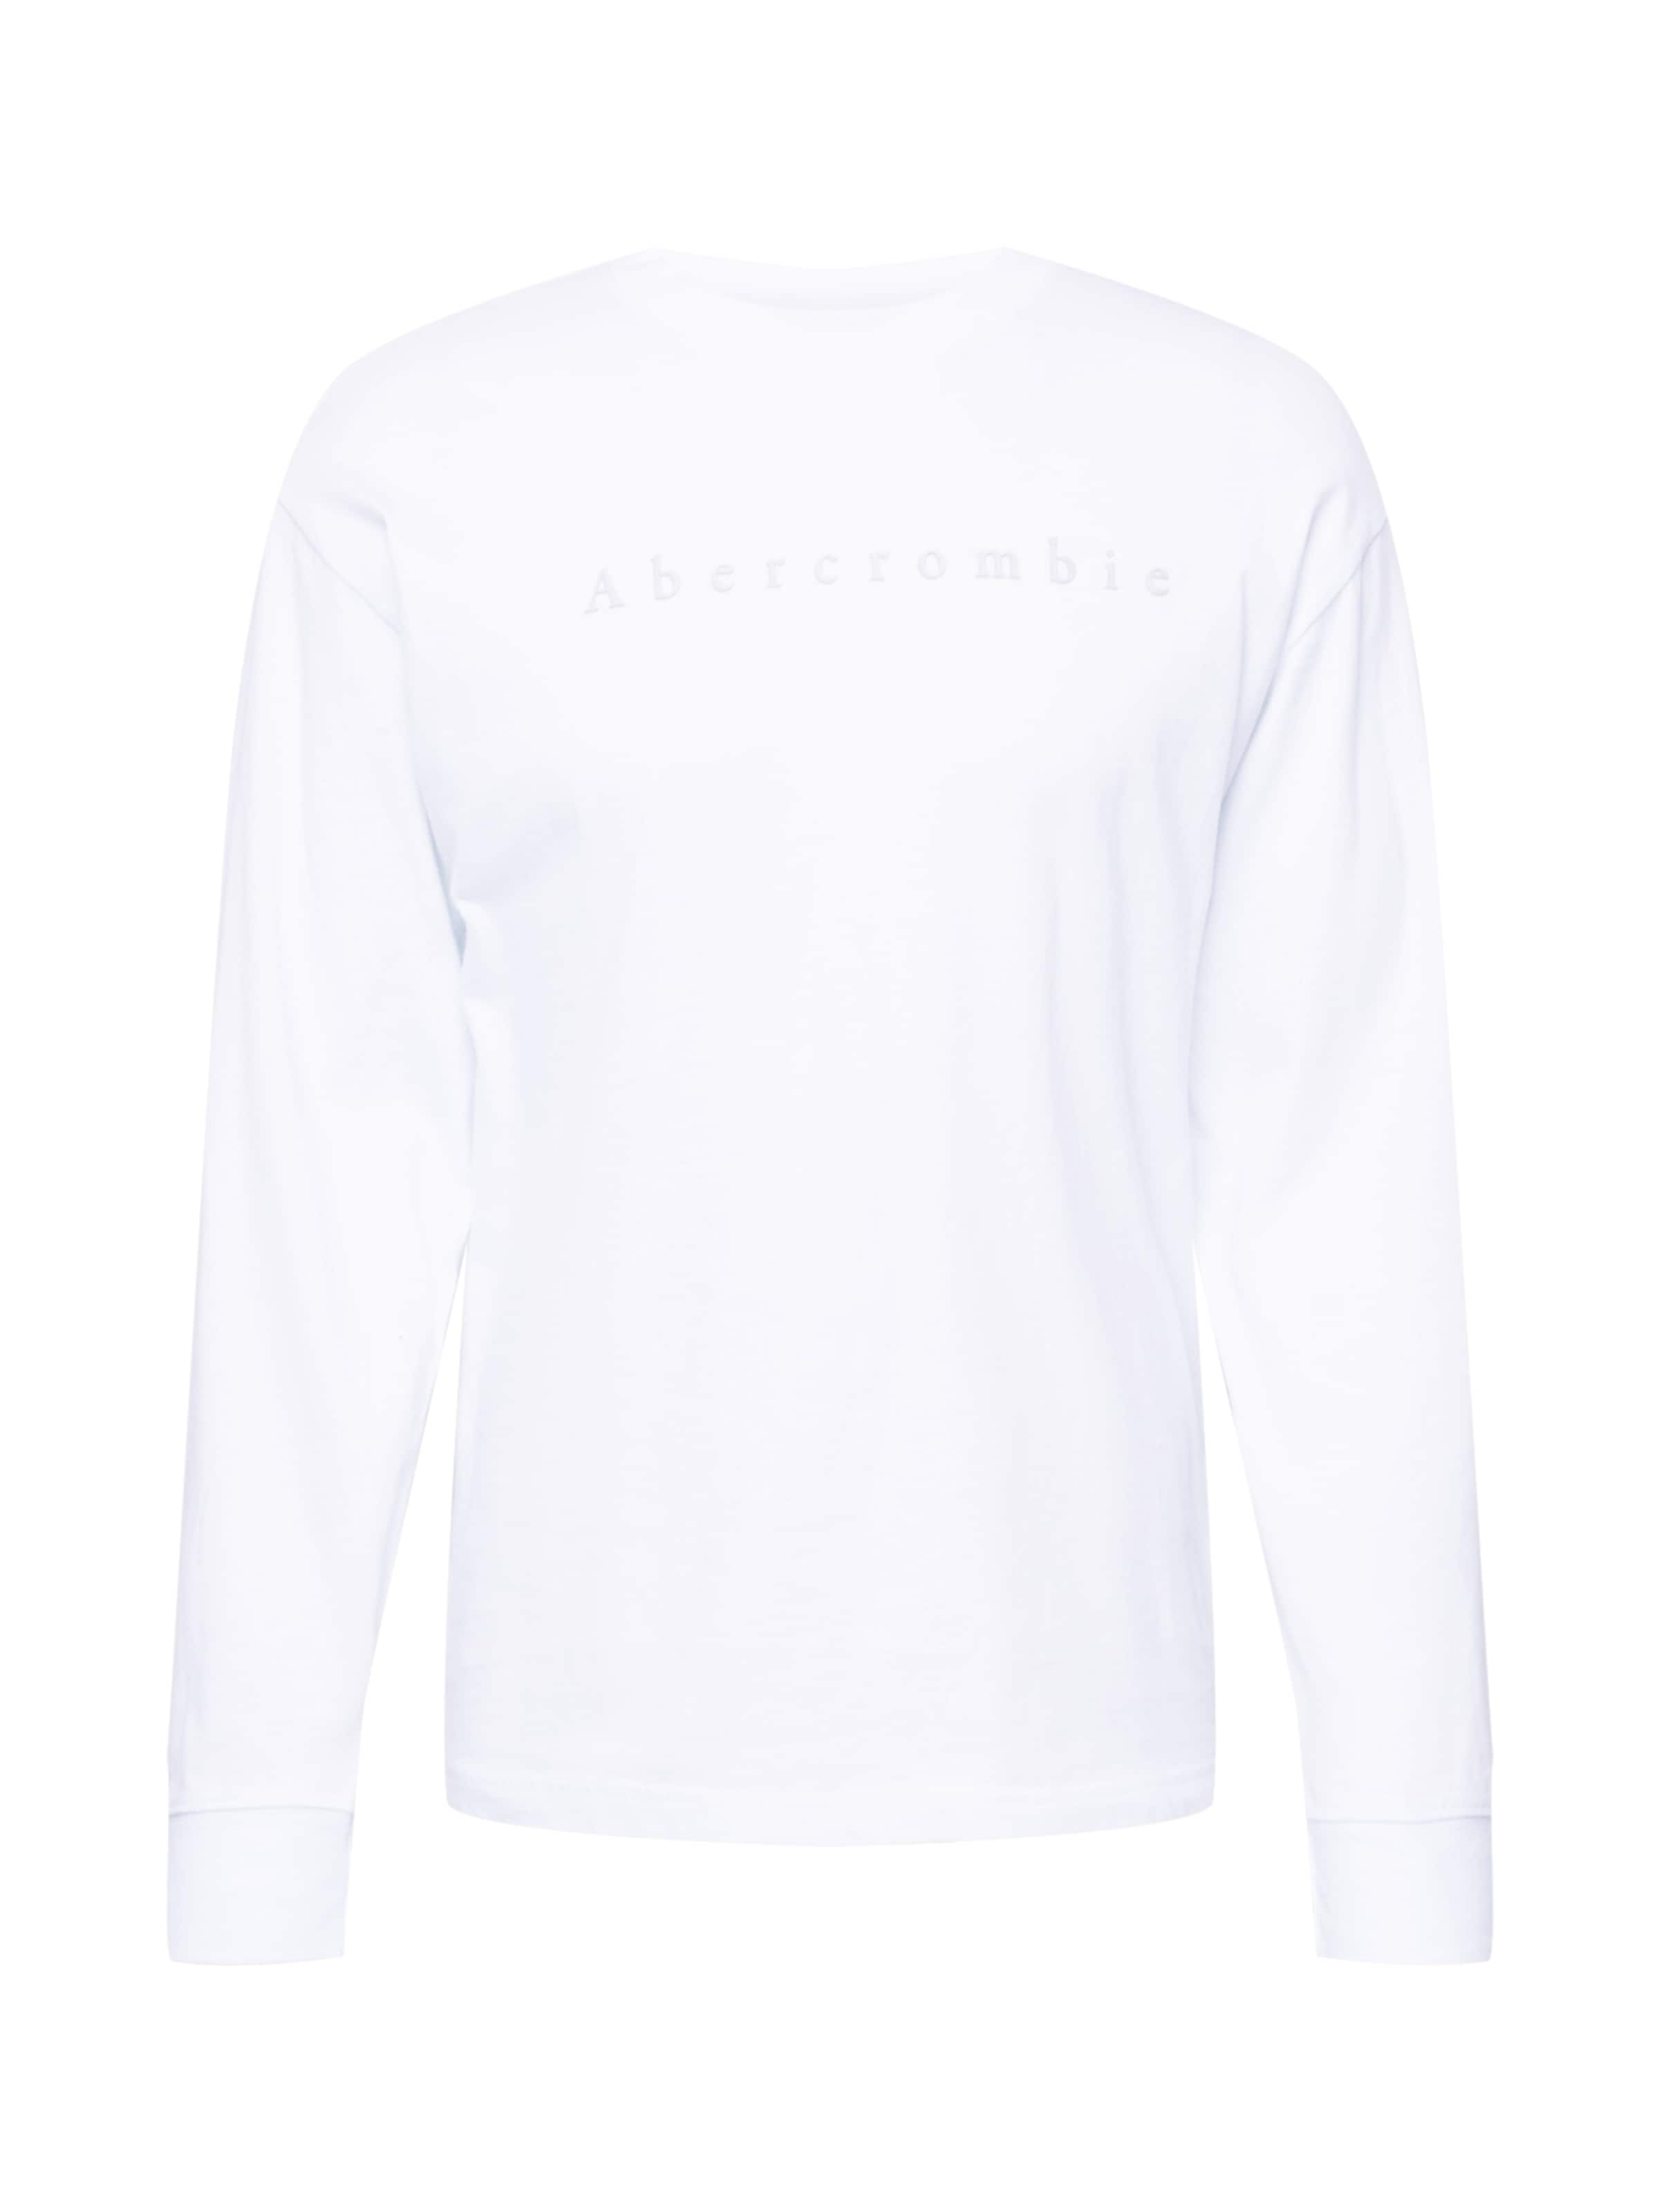 Abbigliamento Uomo Abercrombie & Fitch Maglietta in Bianco 